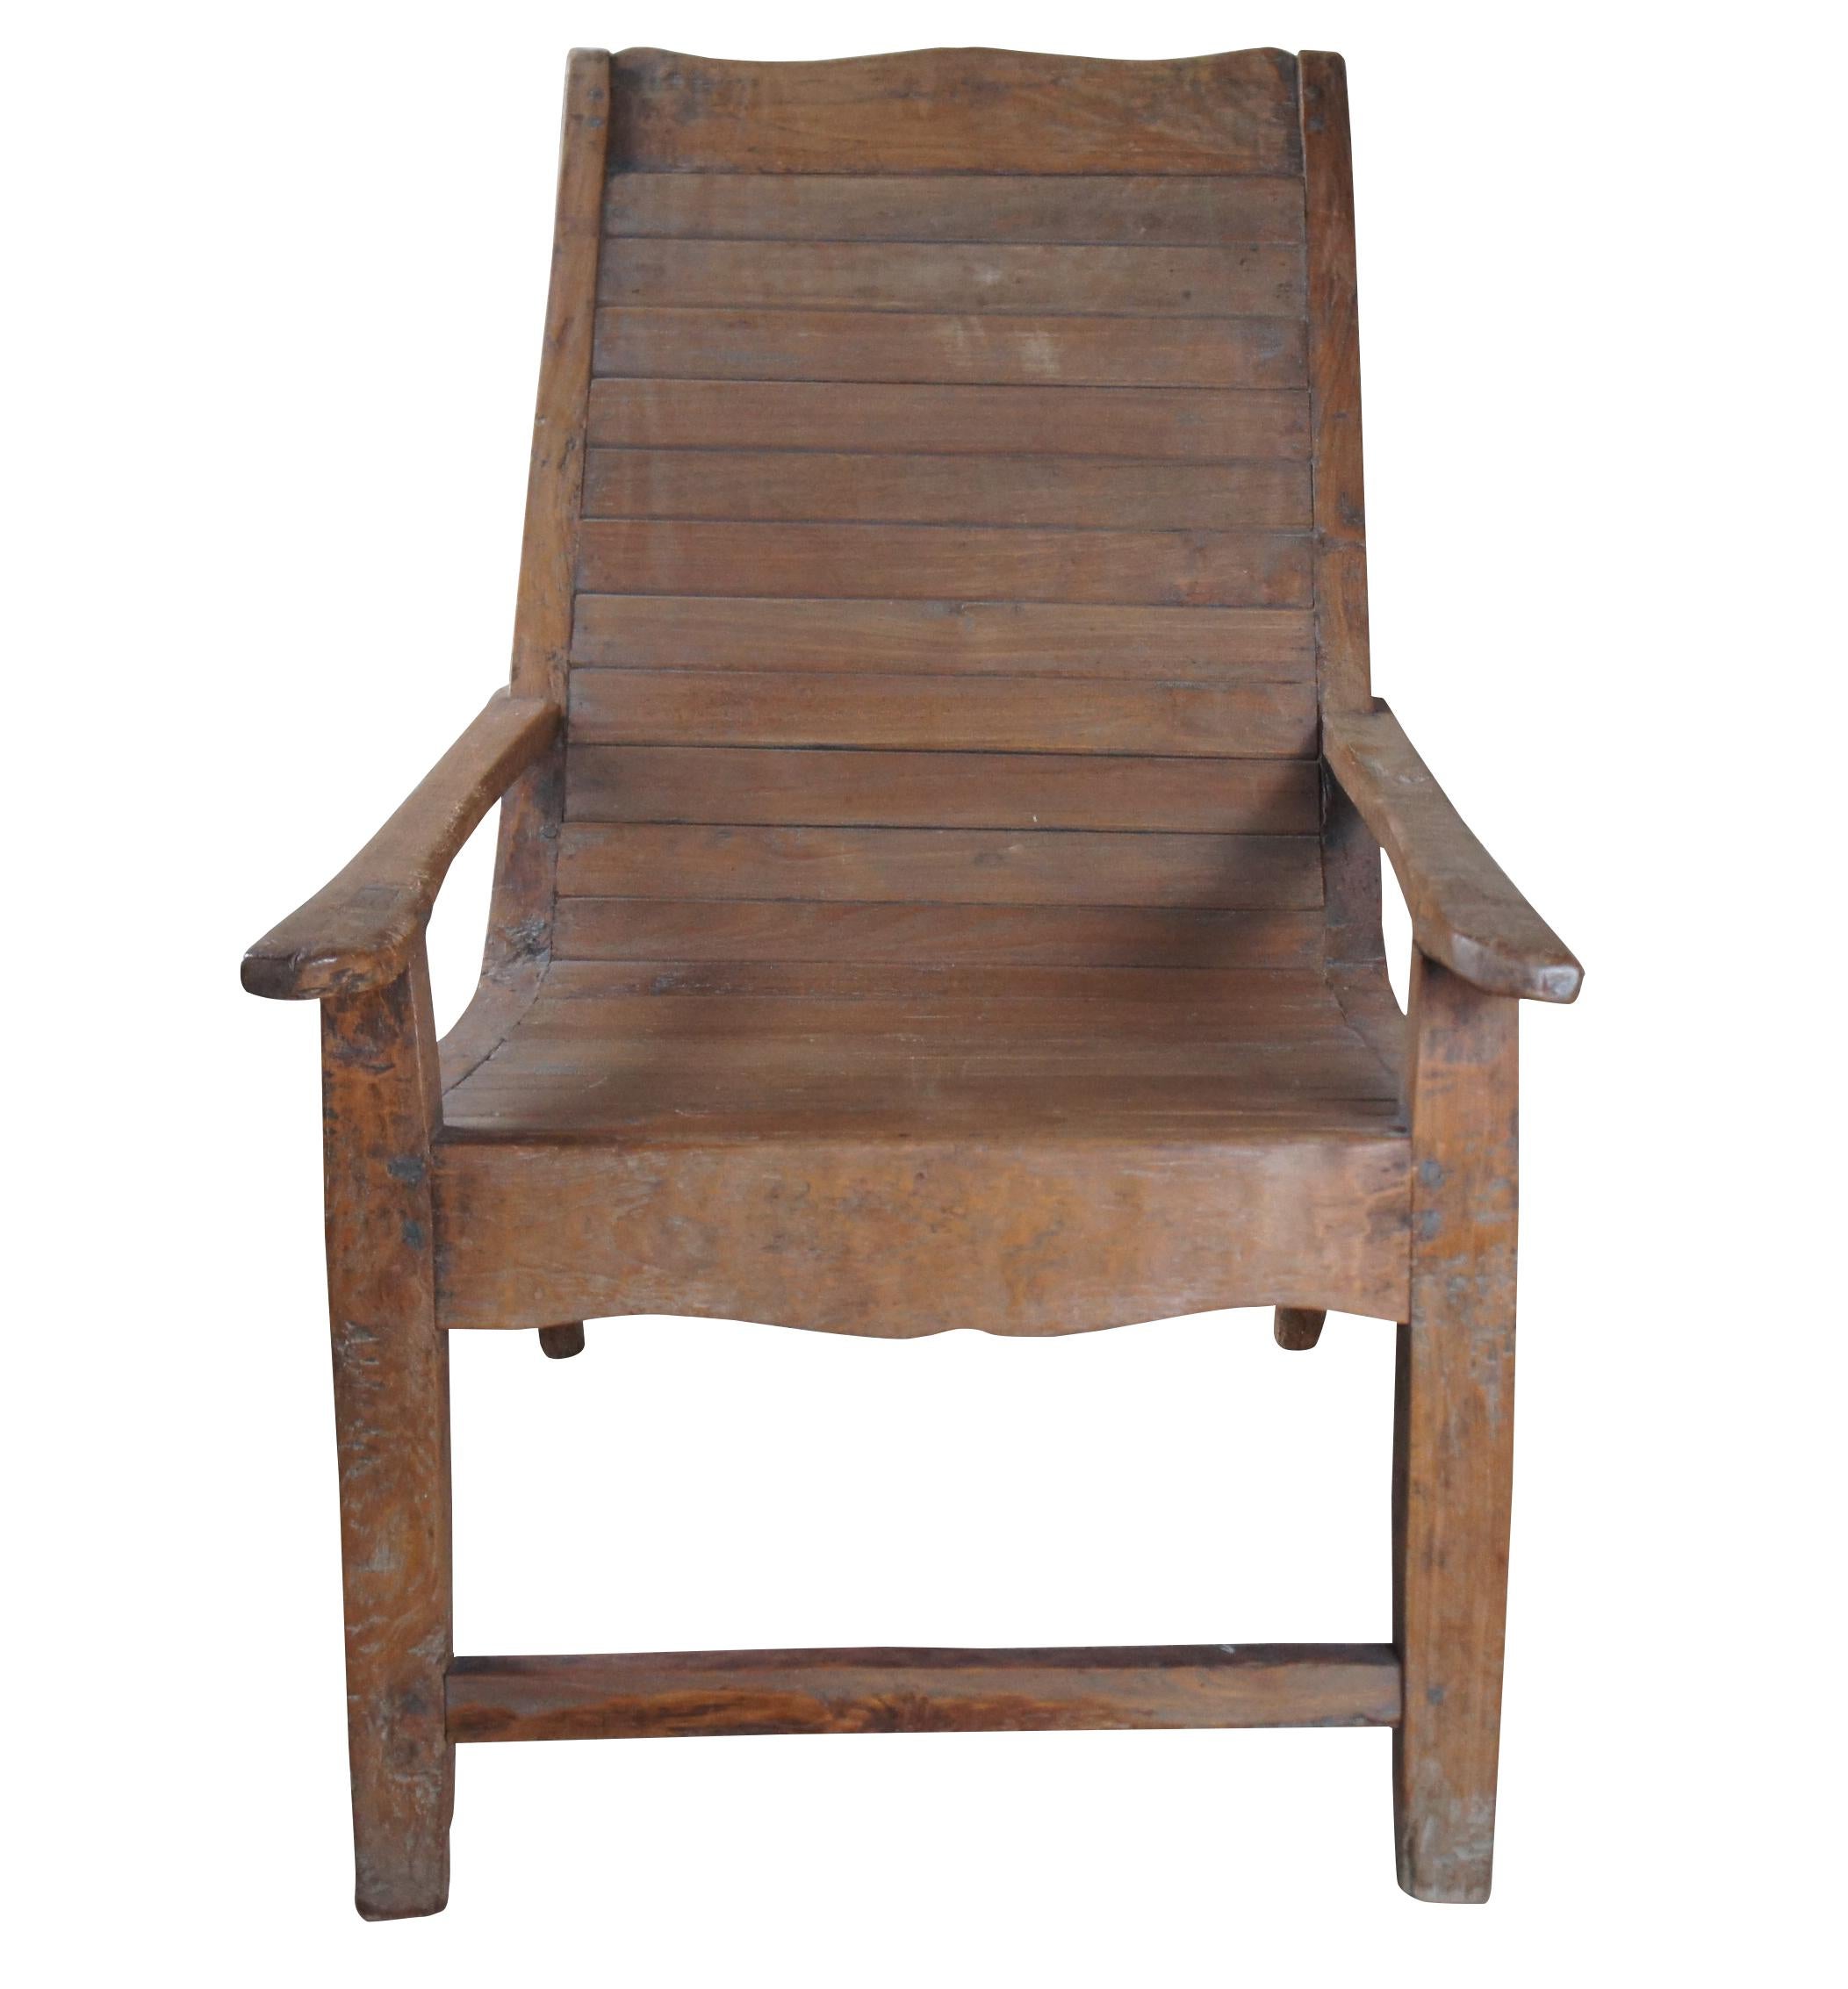 Chaise de plantation anglo-indienne Coloni du début du 20e siècle.  Fabriqué en teck avec un assemblage à tenons et mortaises, il présente un cadre décontracté et des bras longs.  Il est doté d'une barre de crête incurvée et d'une assise rabotée. 